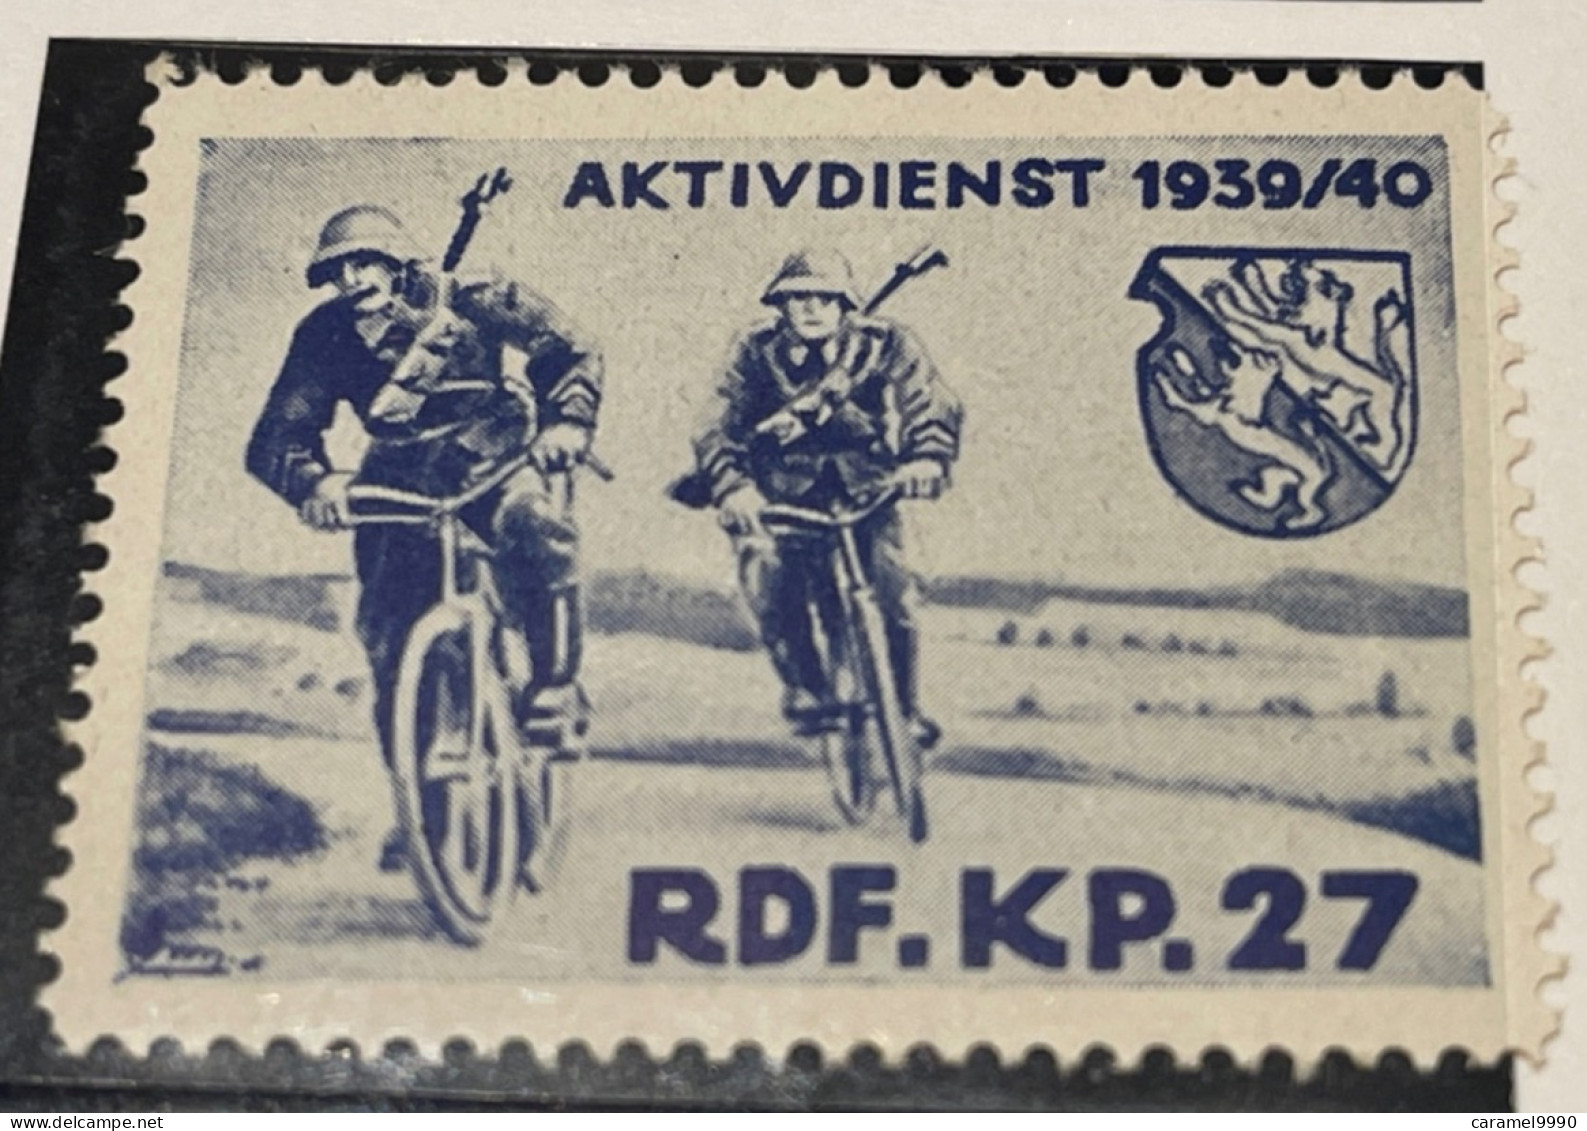 Schweiz Militaire Soldatenmarke RDF.  KP 27  1939- 1940 Aktivdienst Velo Cyclisme Bicycle Radfahren Z 18 - Labels